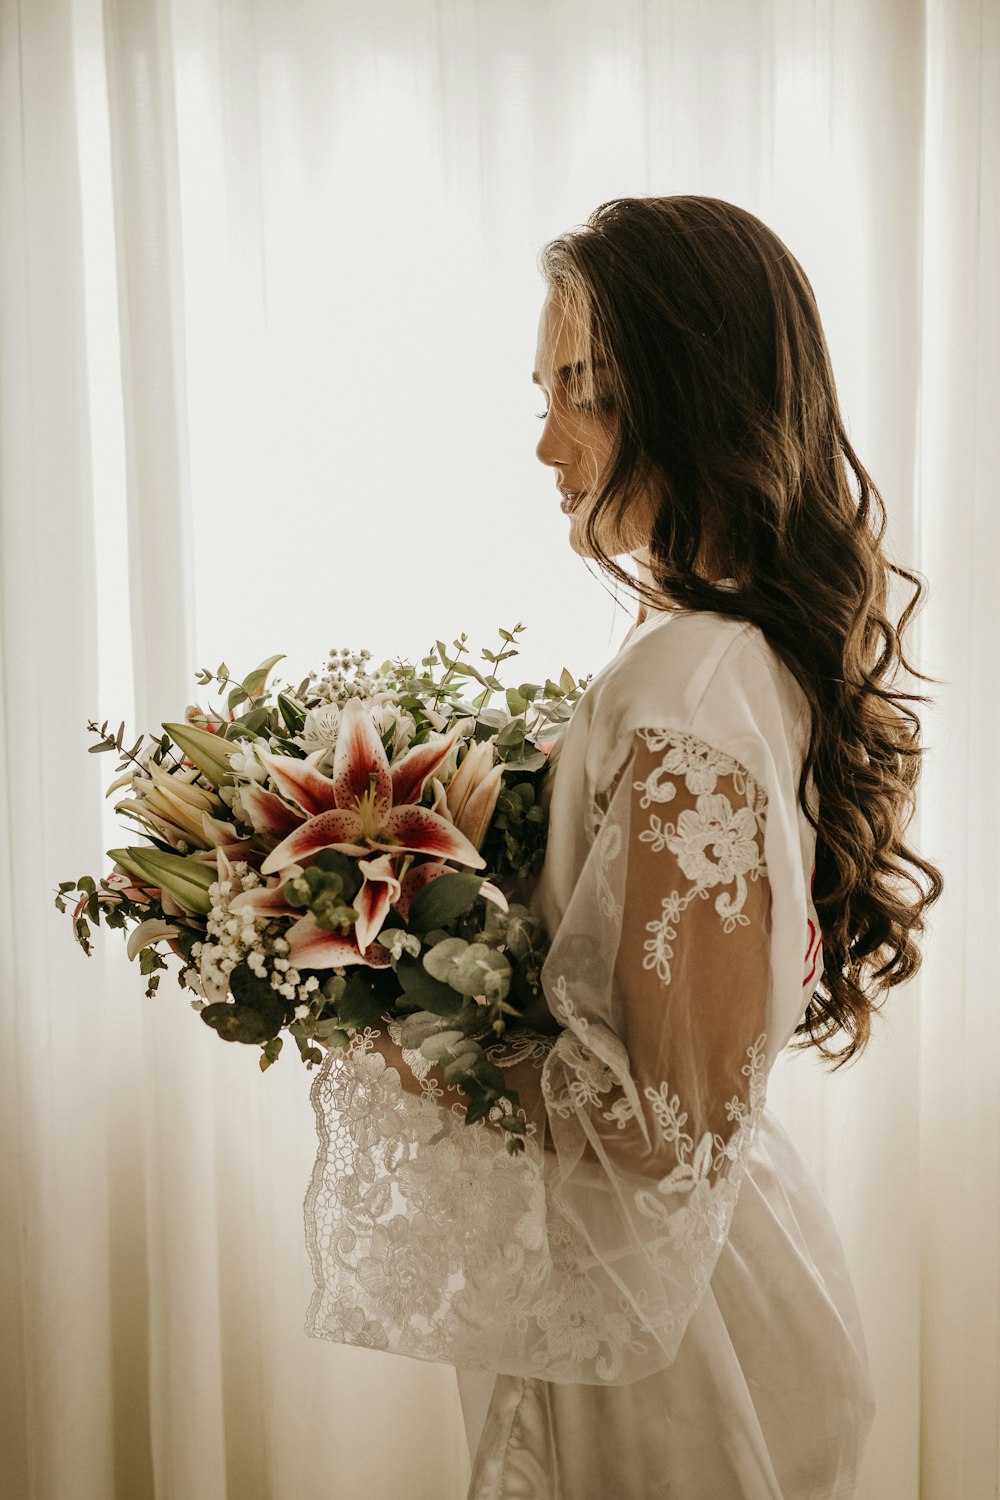 花束を持った白いドレスの女性